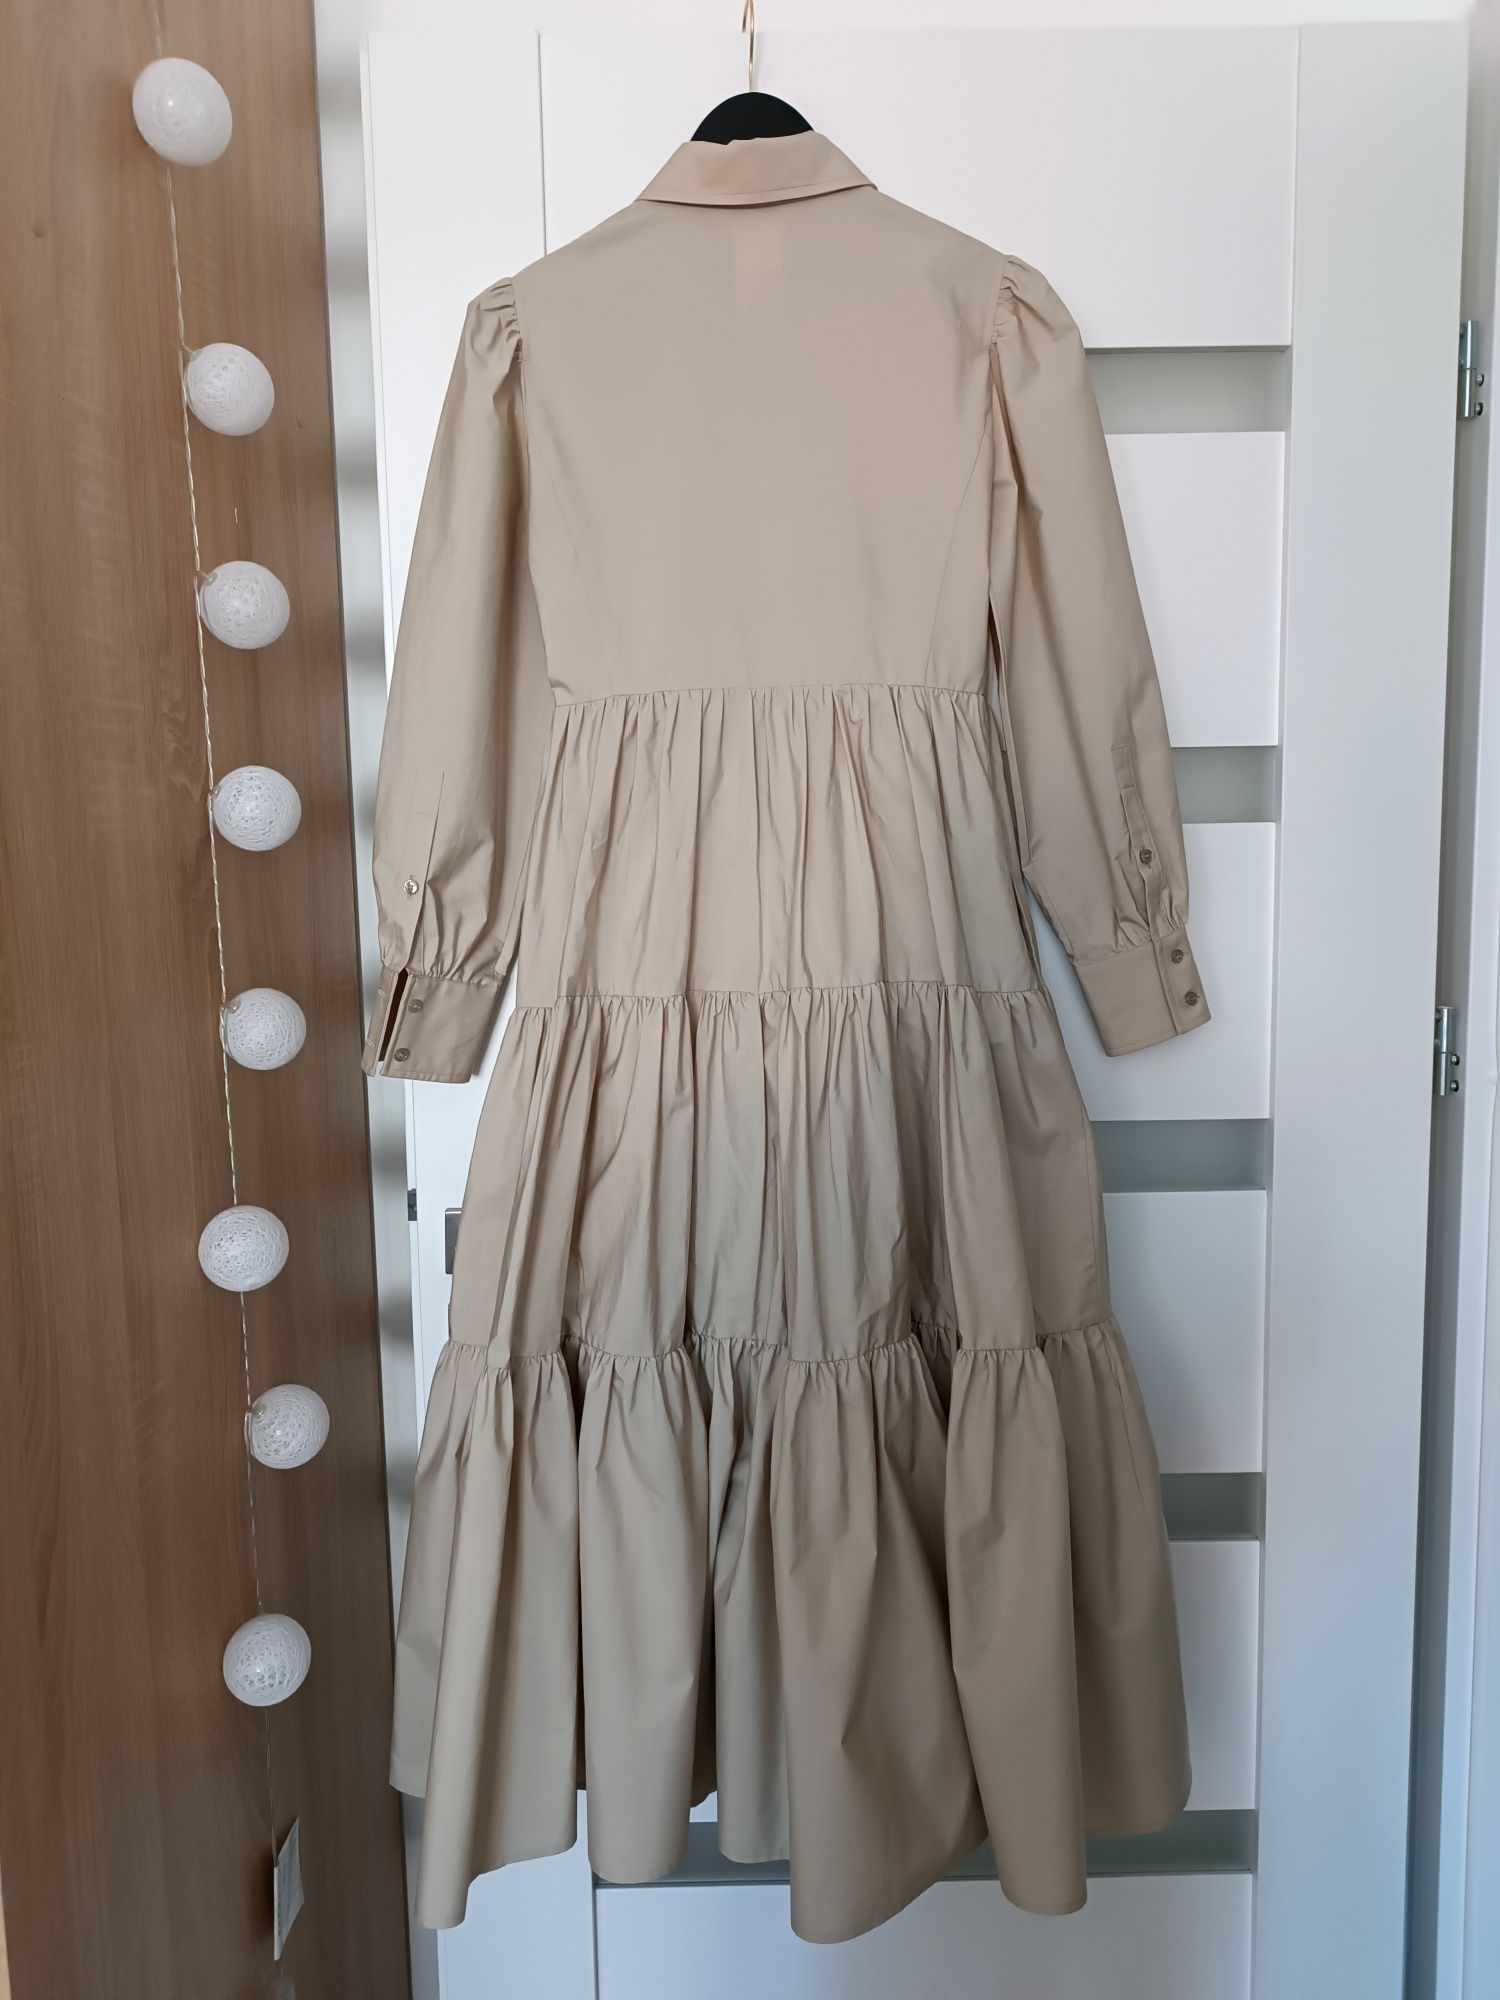 Max Mara Bergen Dress Sukienka MIDI 34-36 XS-S beż/kremowy